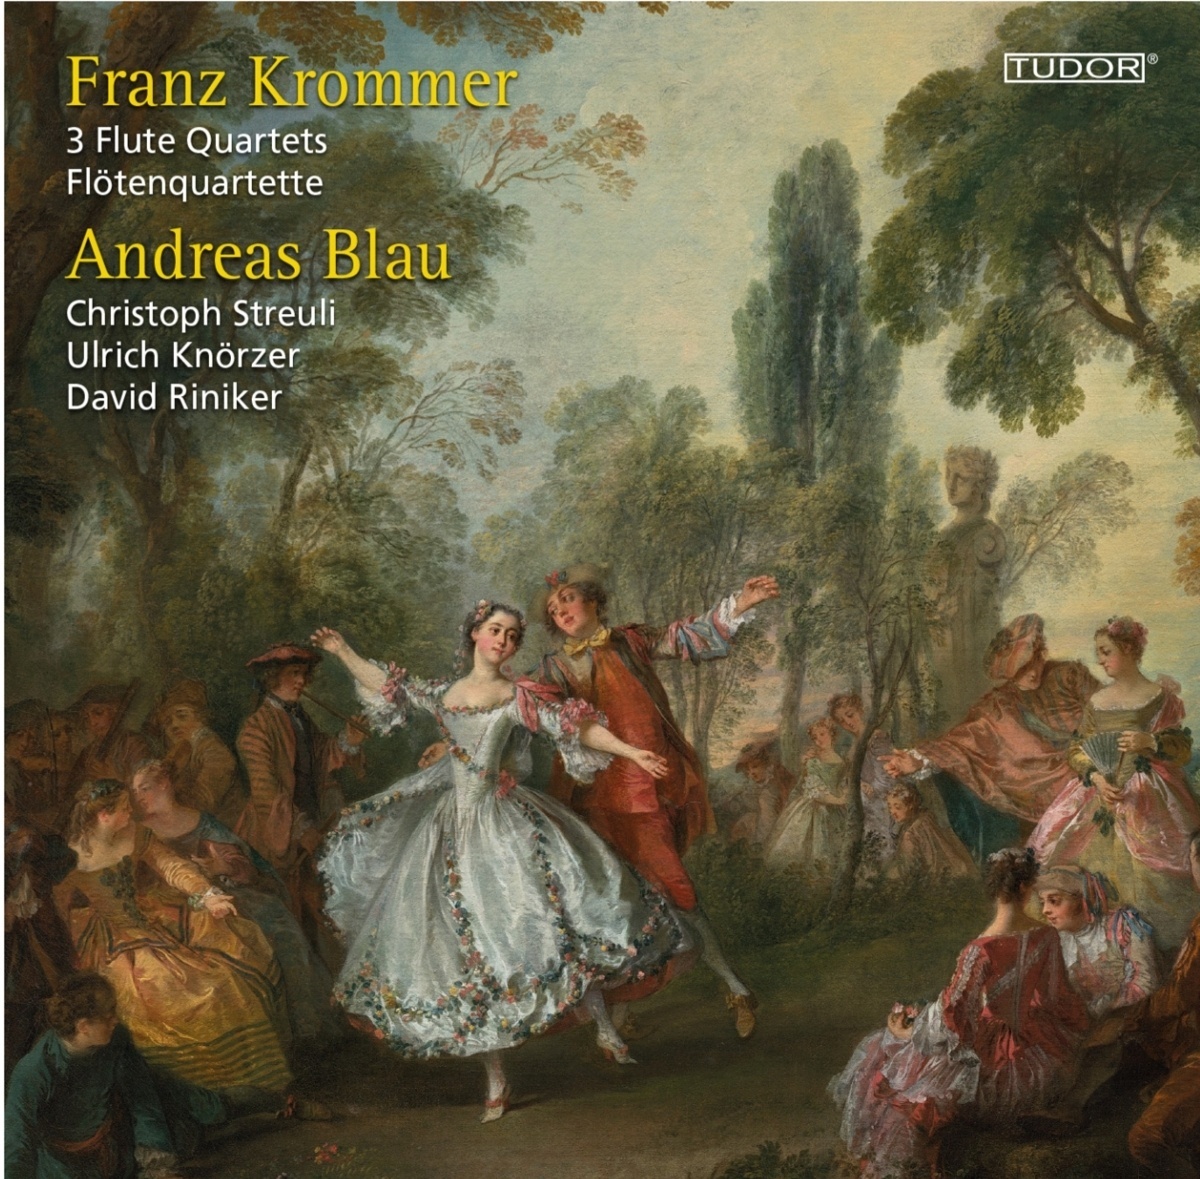 3 Flötenquartette - Andreas Blau  Chr. Streuli  U. Knörzer  D. Riniker. (CD)